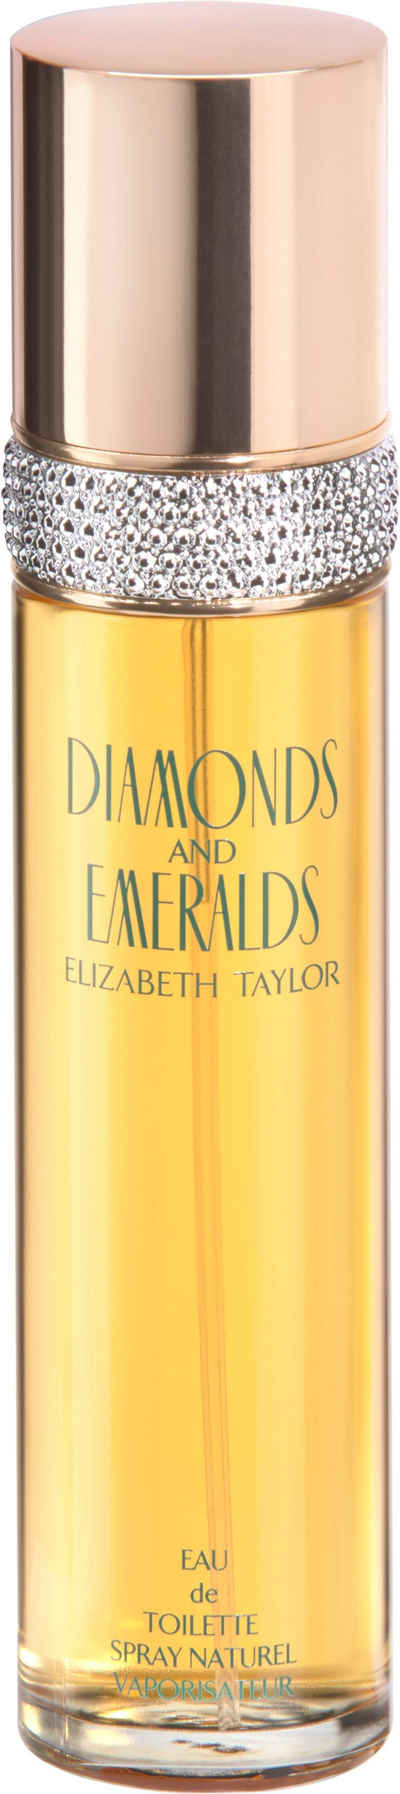 Elizabeth Taylor Eau de Toilette Diamonds & Emeralds